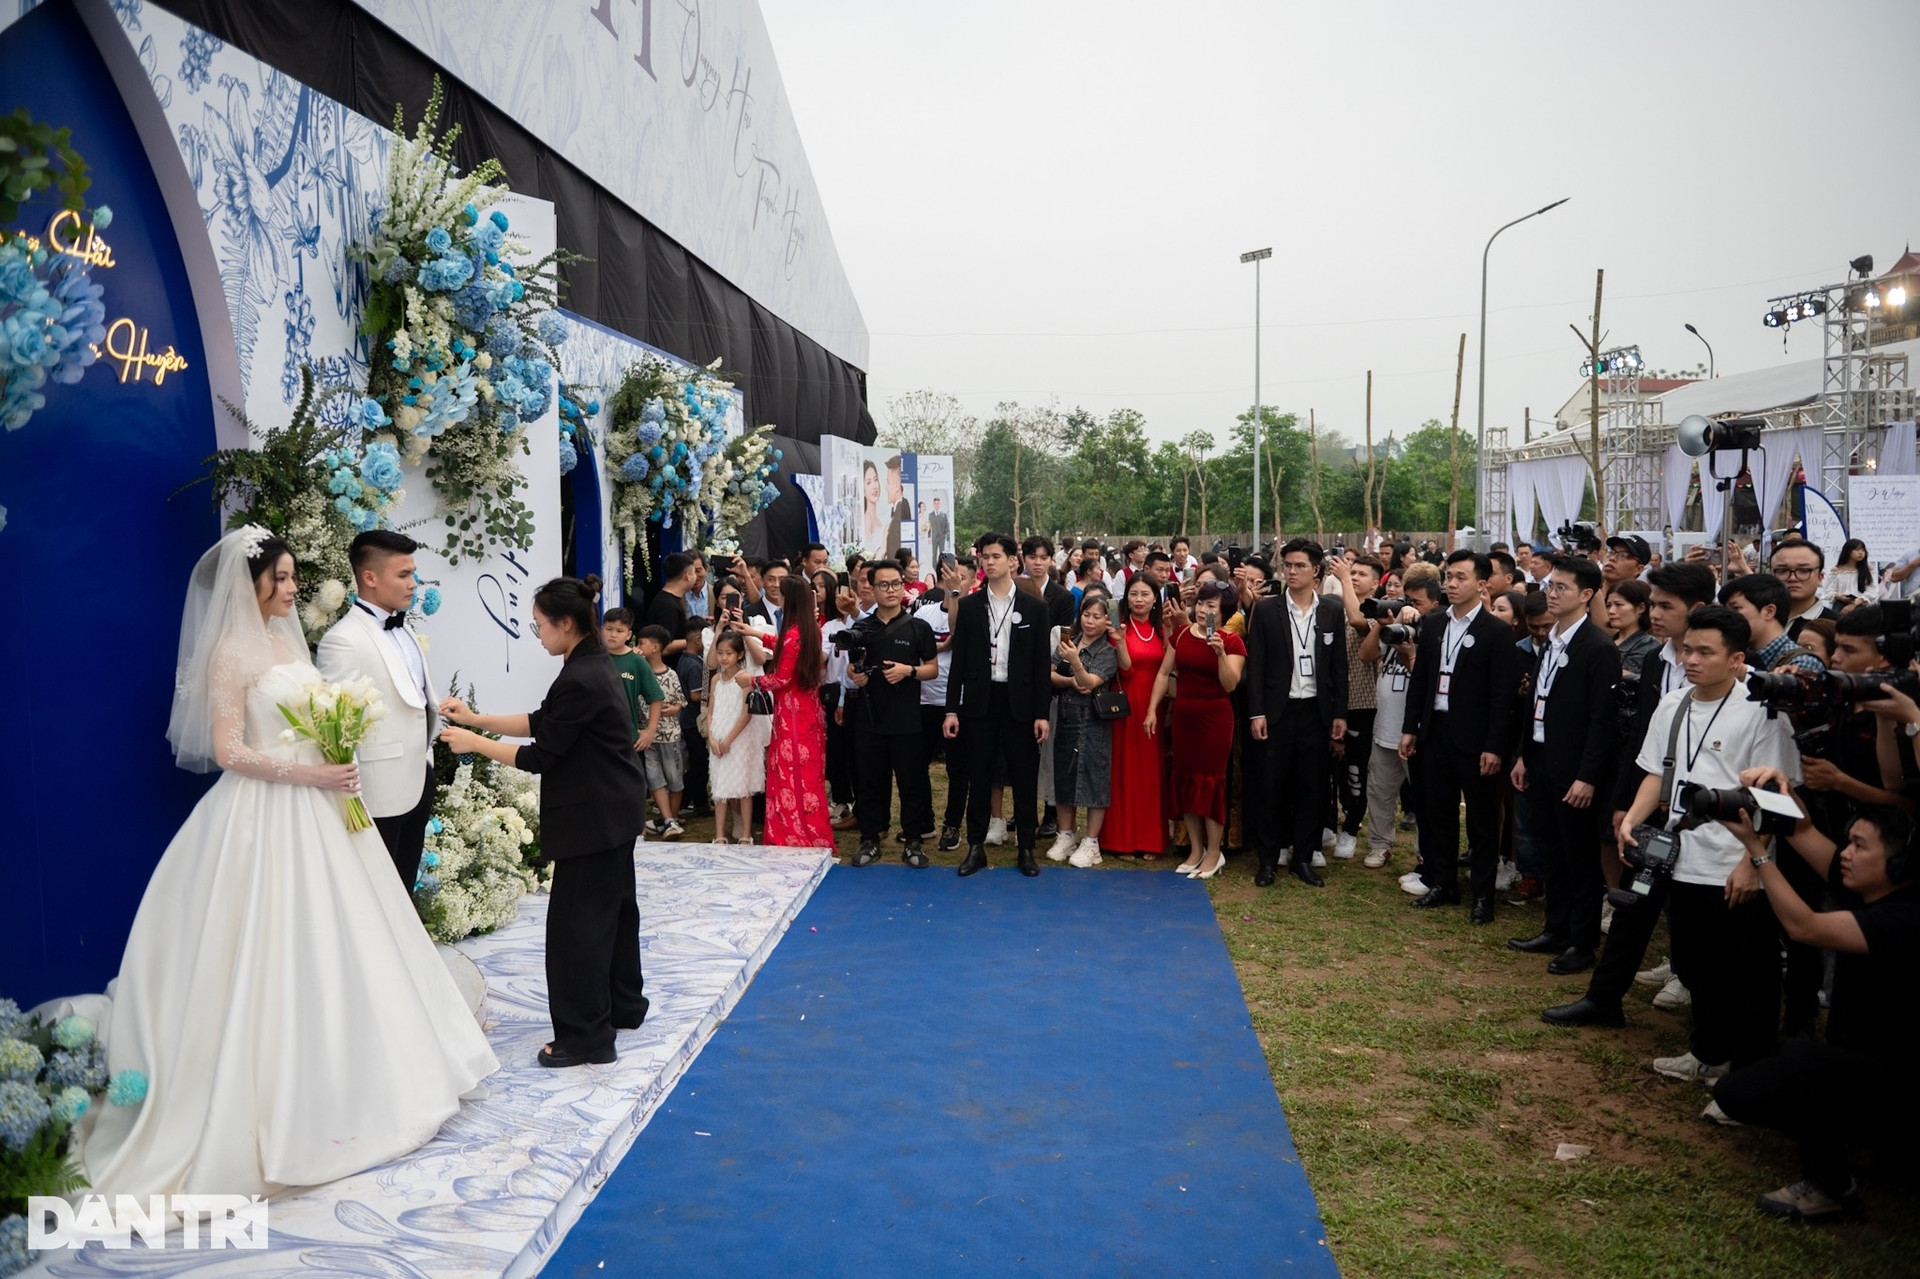 HLV Park Hang Seo nắm chặt tay Quang Hải, rạng rỡ đến dự đám cưới - 3